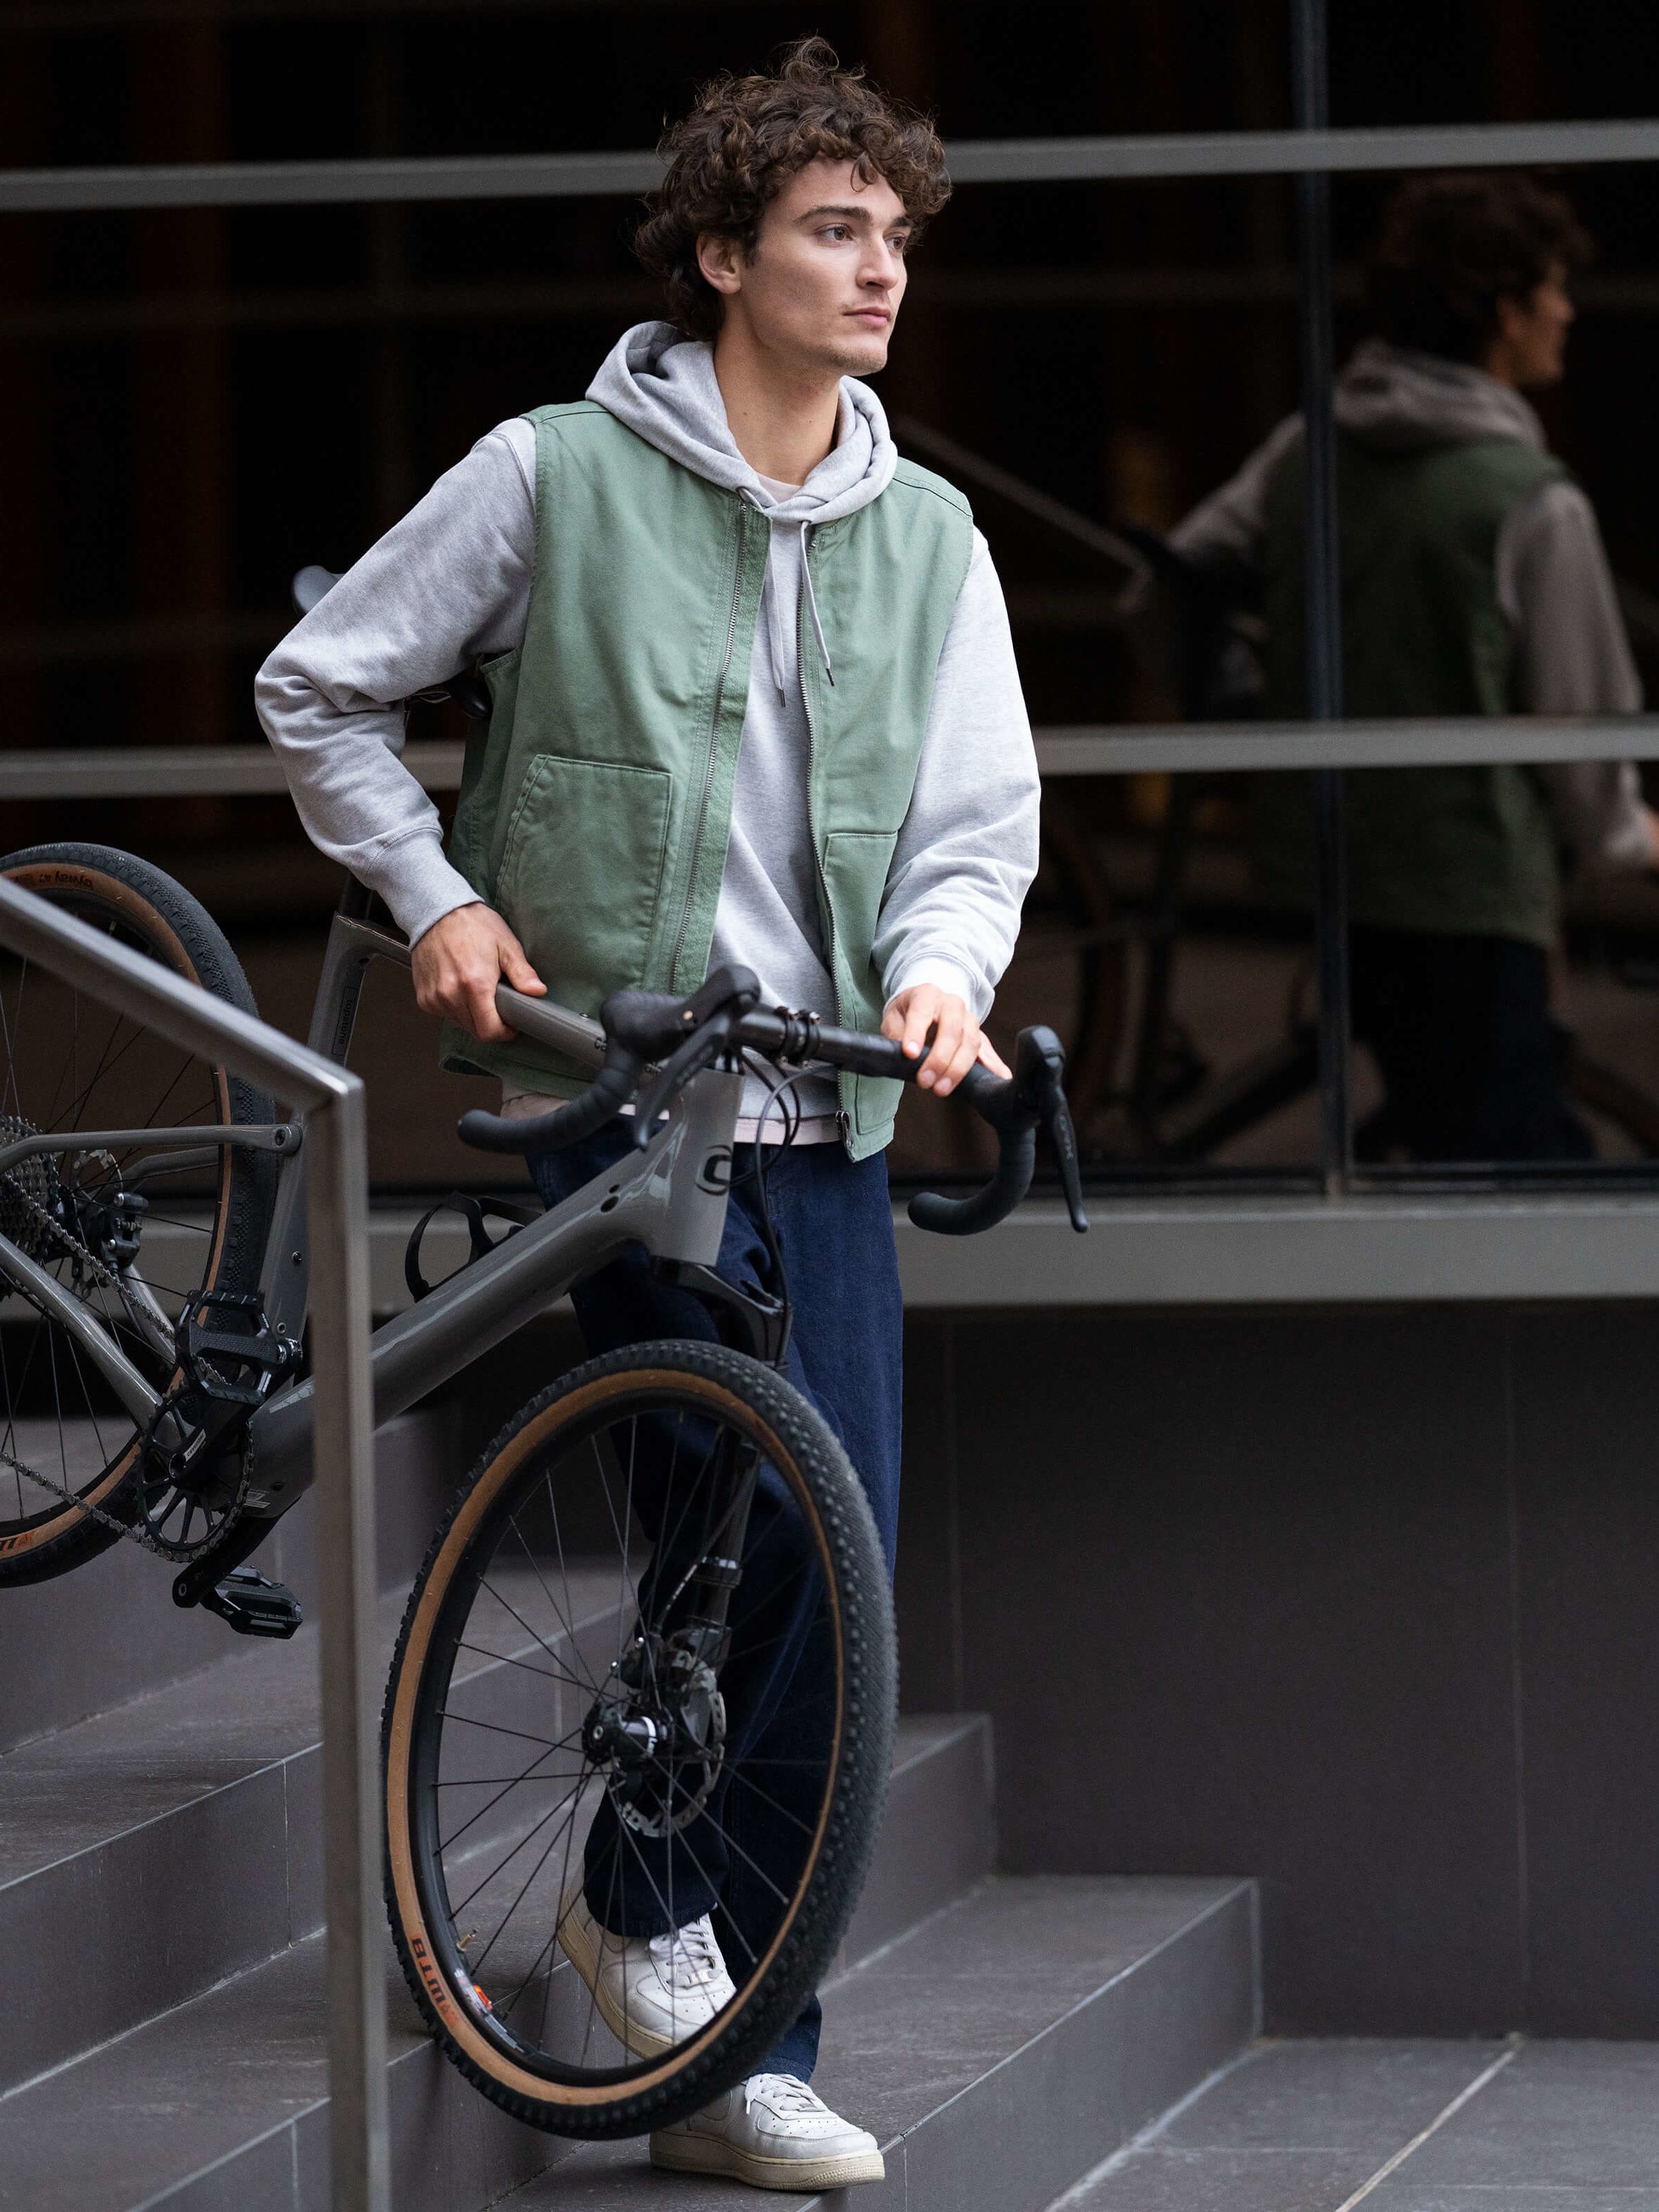 Junge, der sein Fahrrad eine Treppe herunter trägt